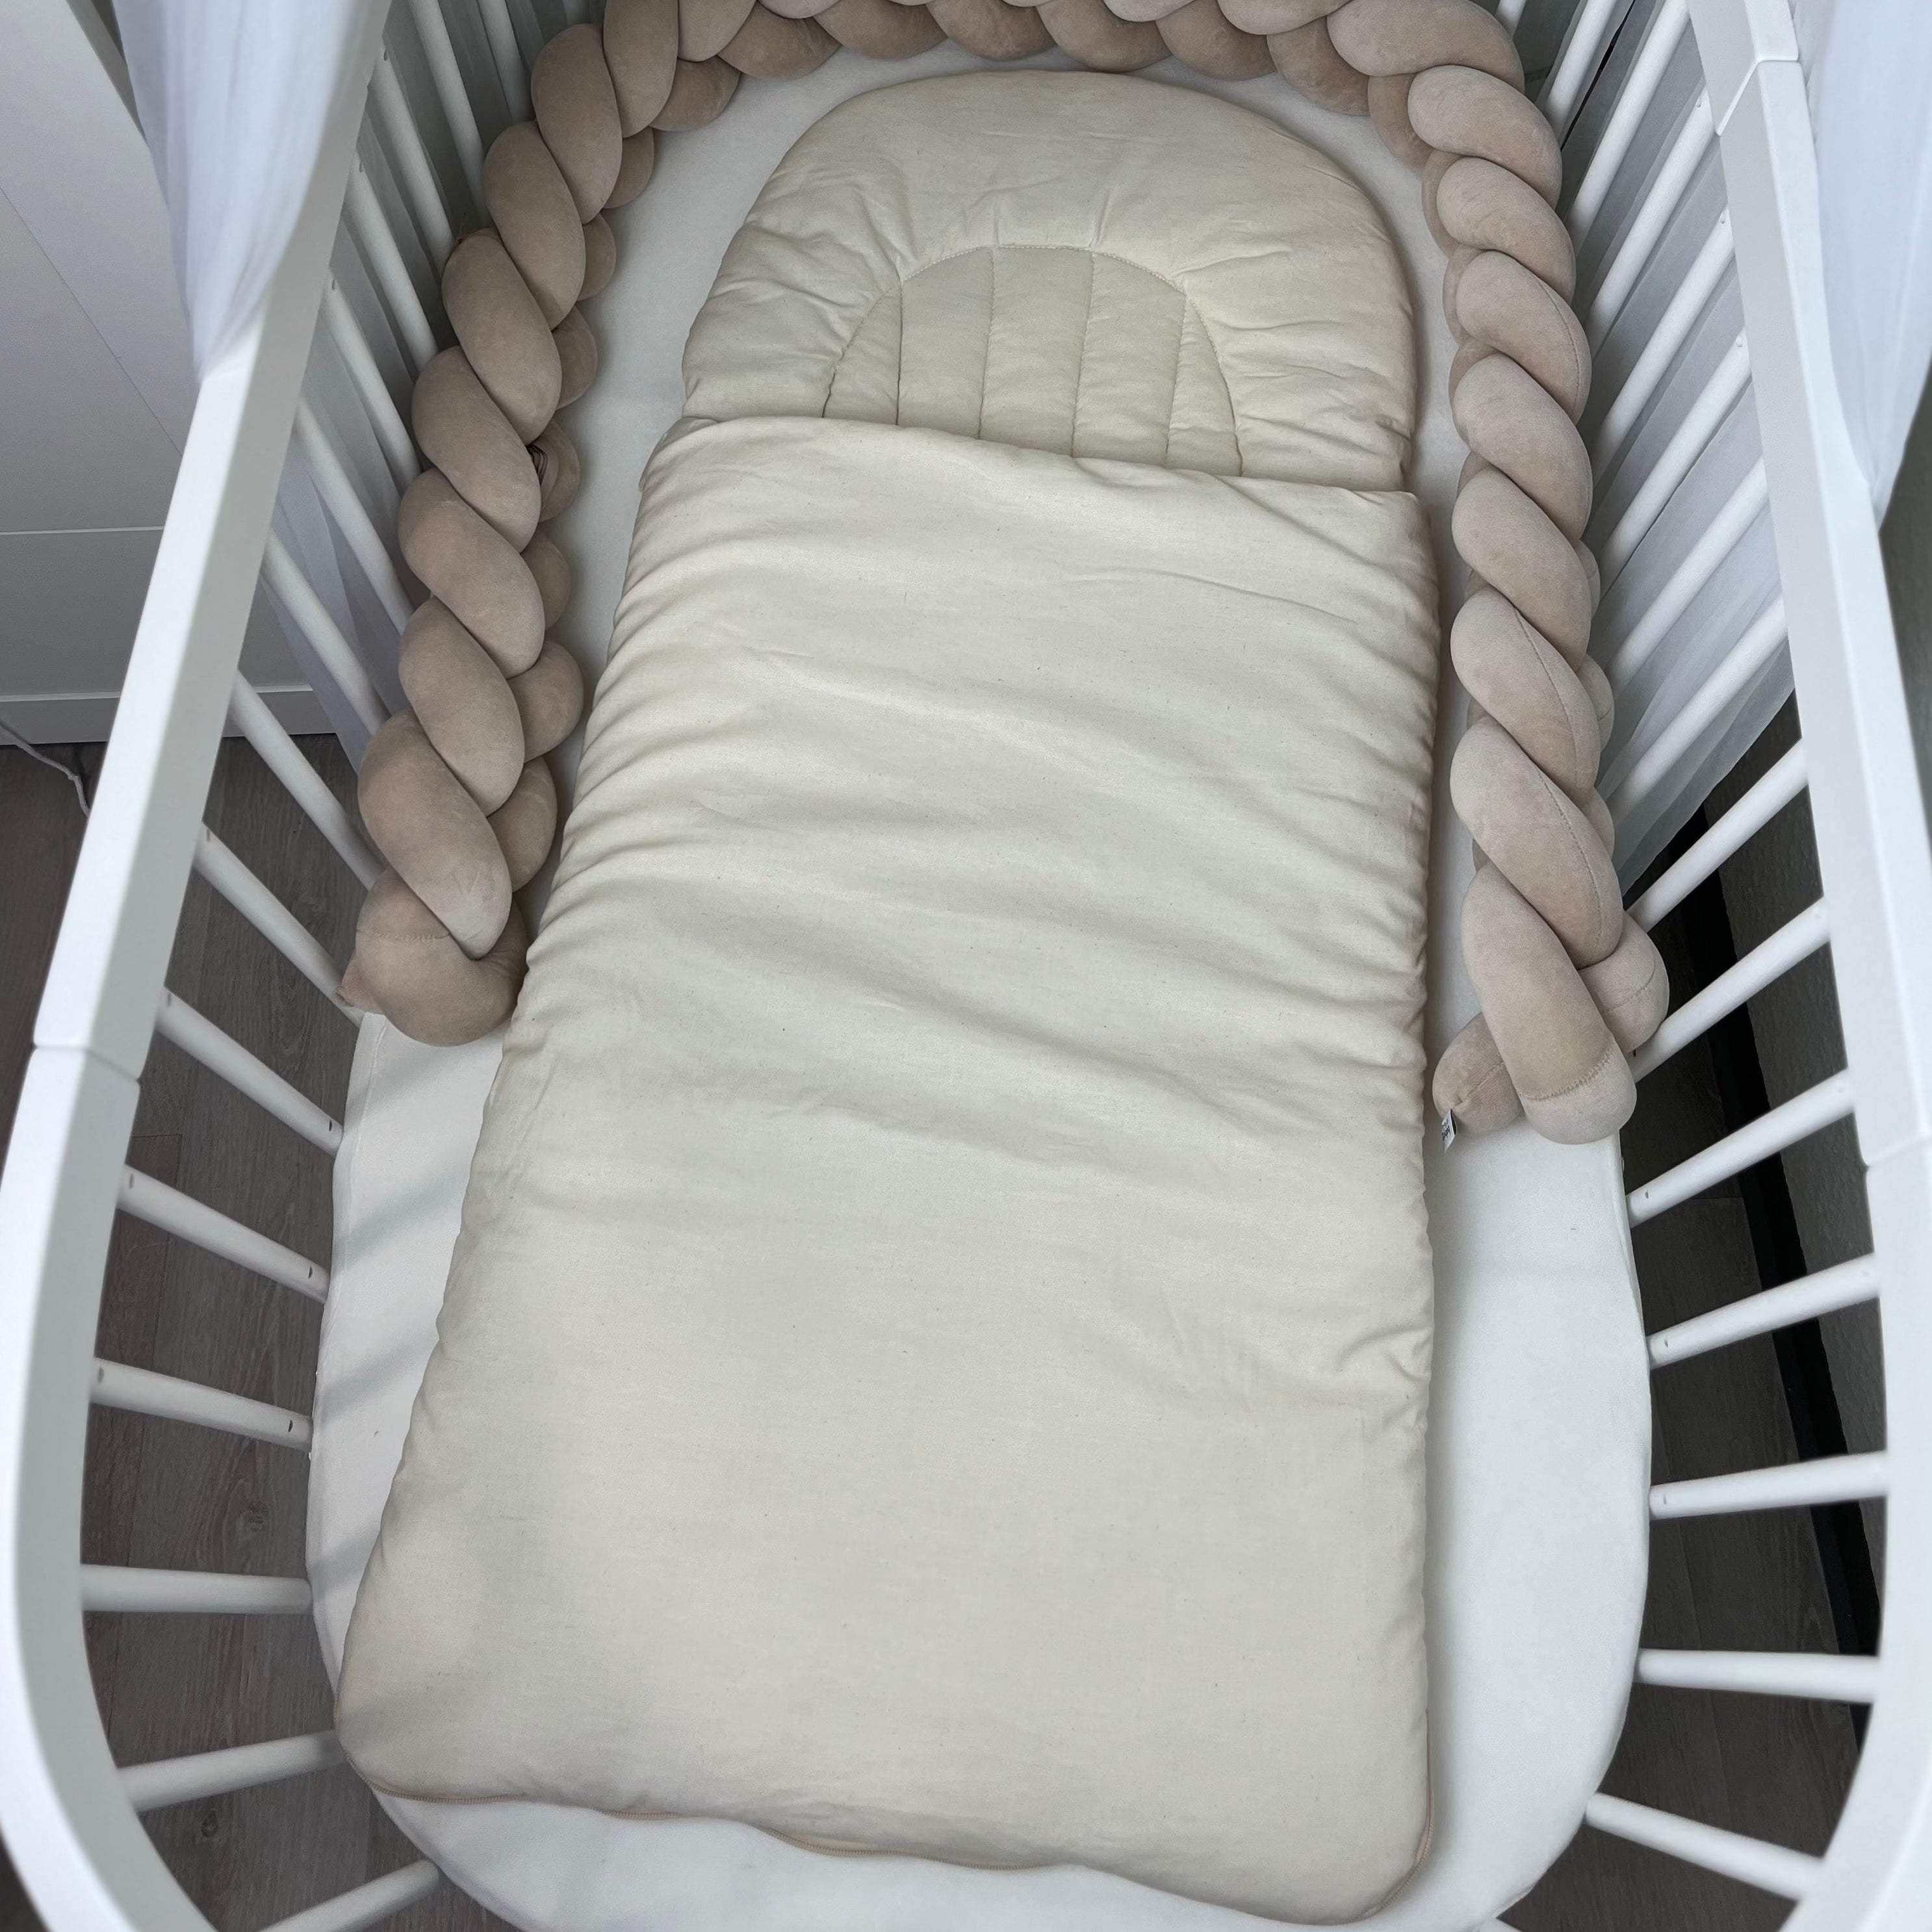 Flacher Babyschlafsack mit Wellenschnitt ORGANIC | ORGANISCHE BIO-BAUMWOLLE